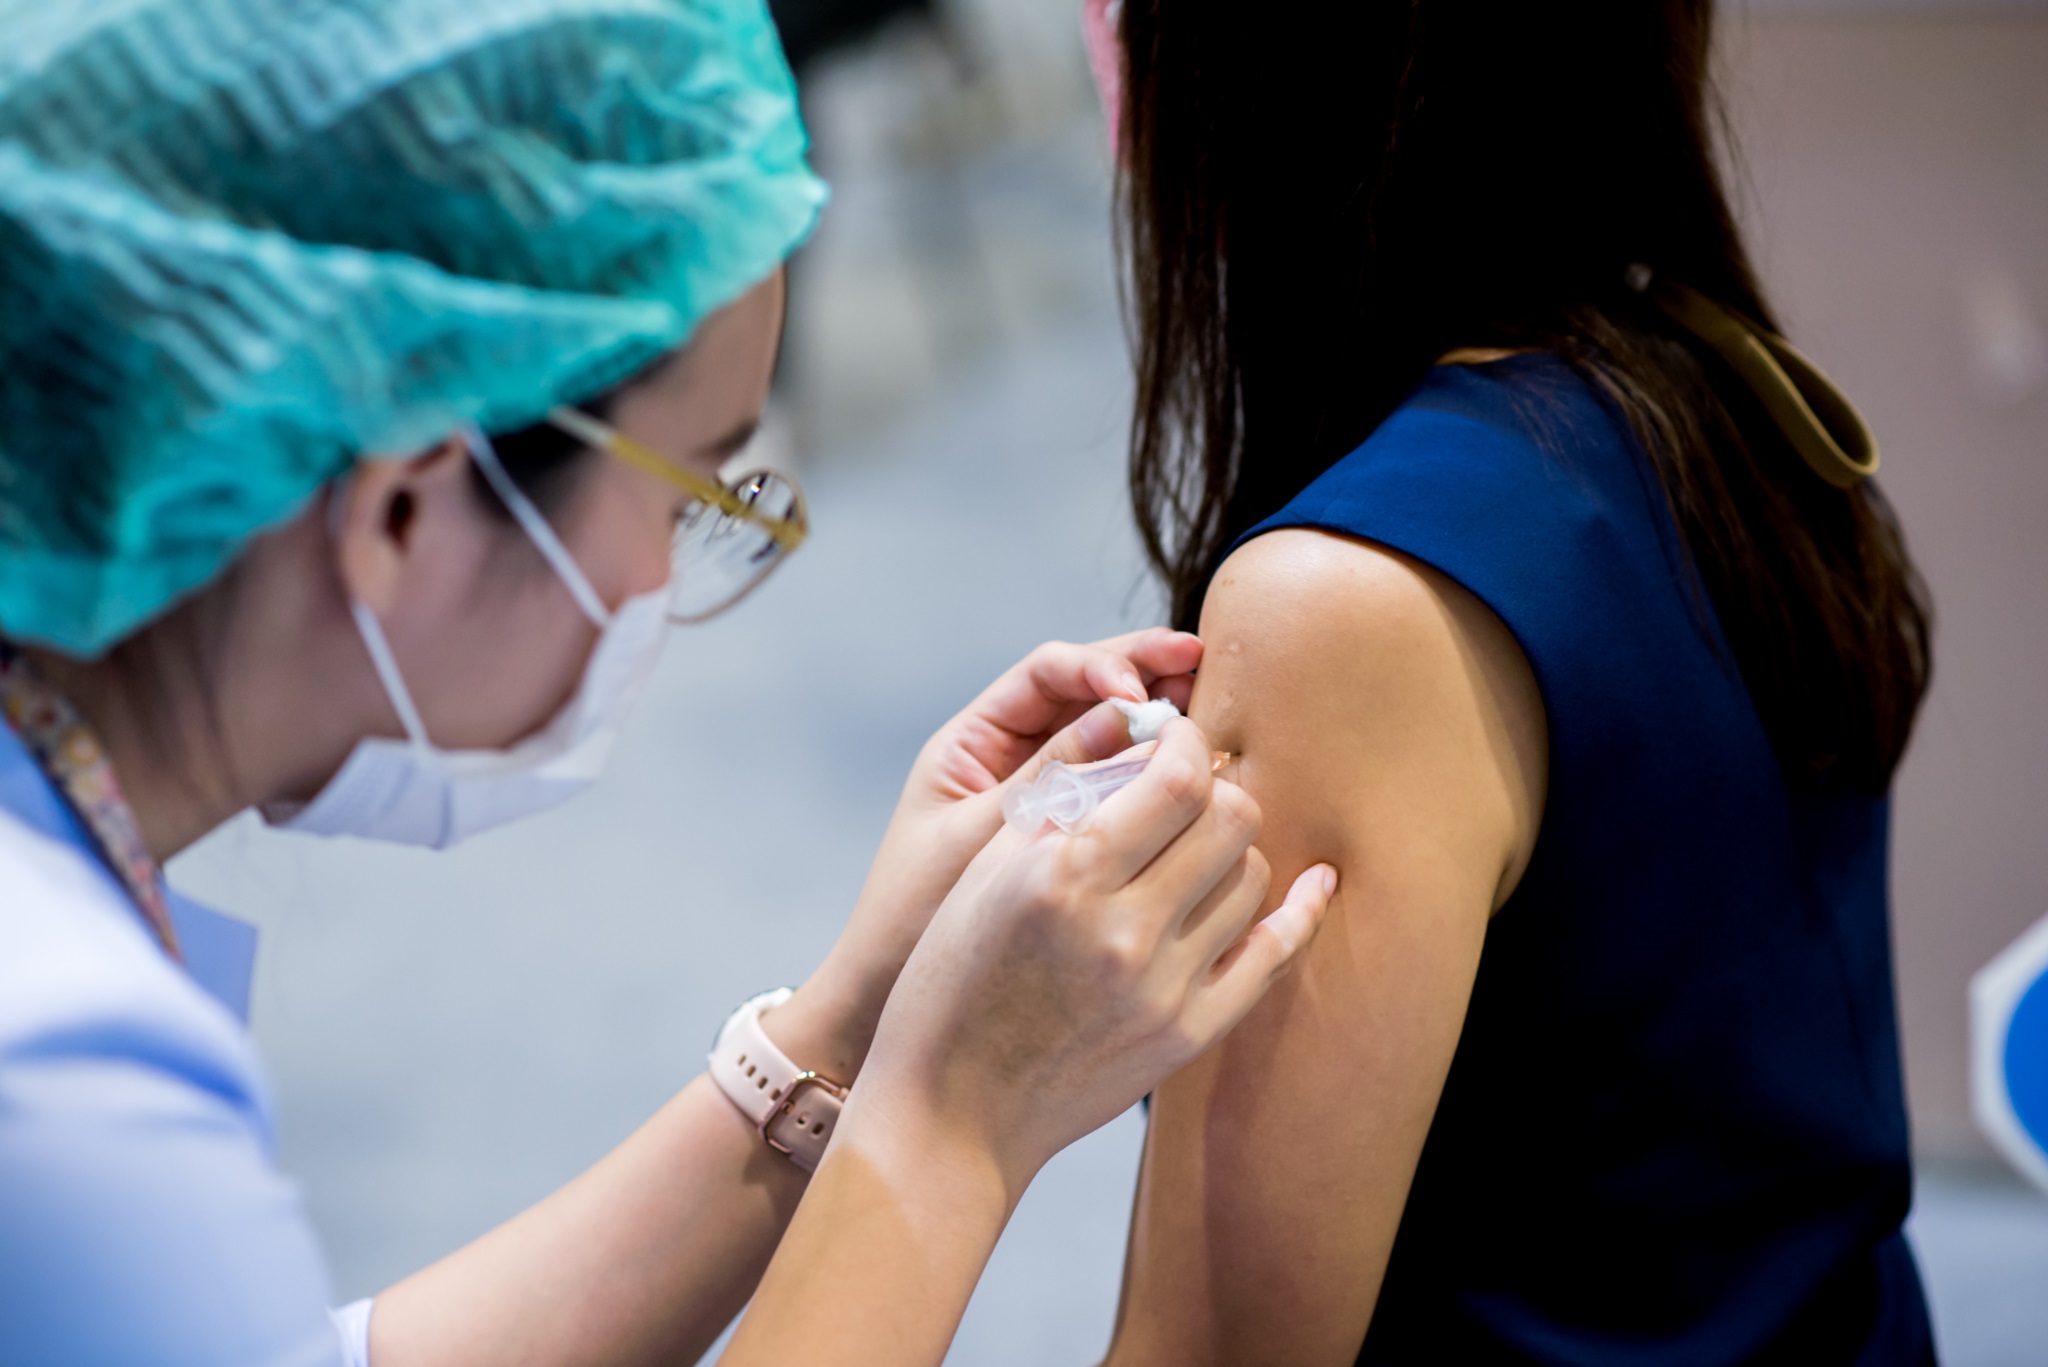 คณะแพทยศาสตร์โรงพยาบาลรามาธิบดี มหาวิทยาลัยมหิดล ออกหน่วยความร่วมมือบริการฉีดวัคซีน COVID-19